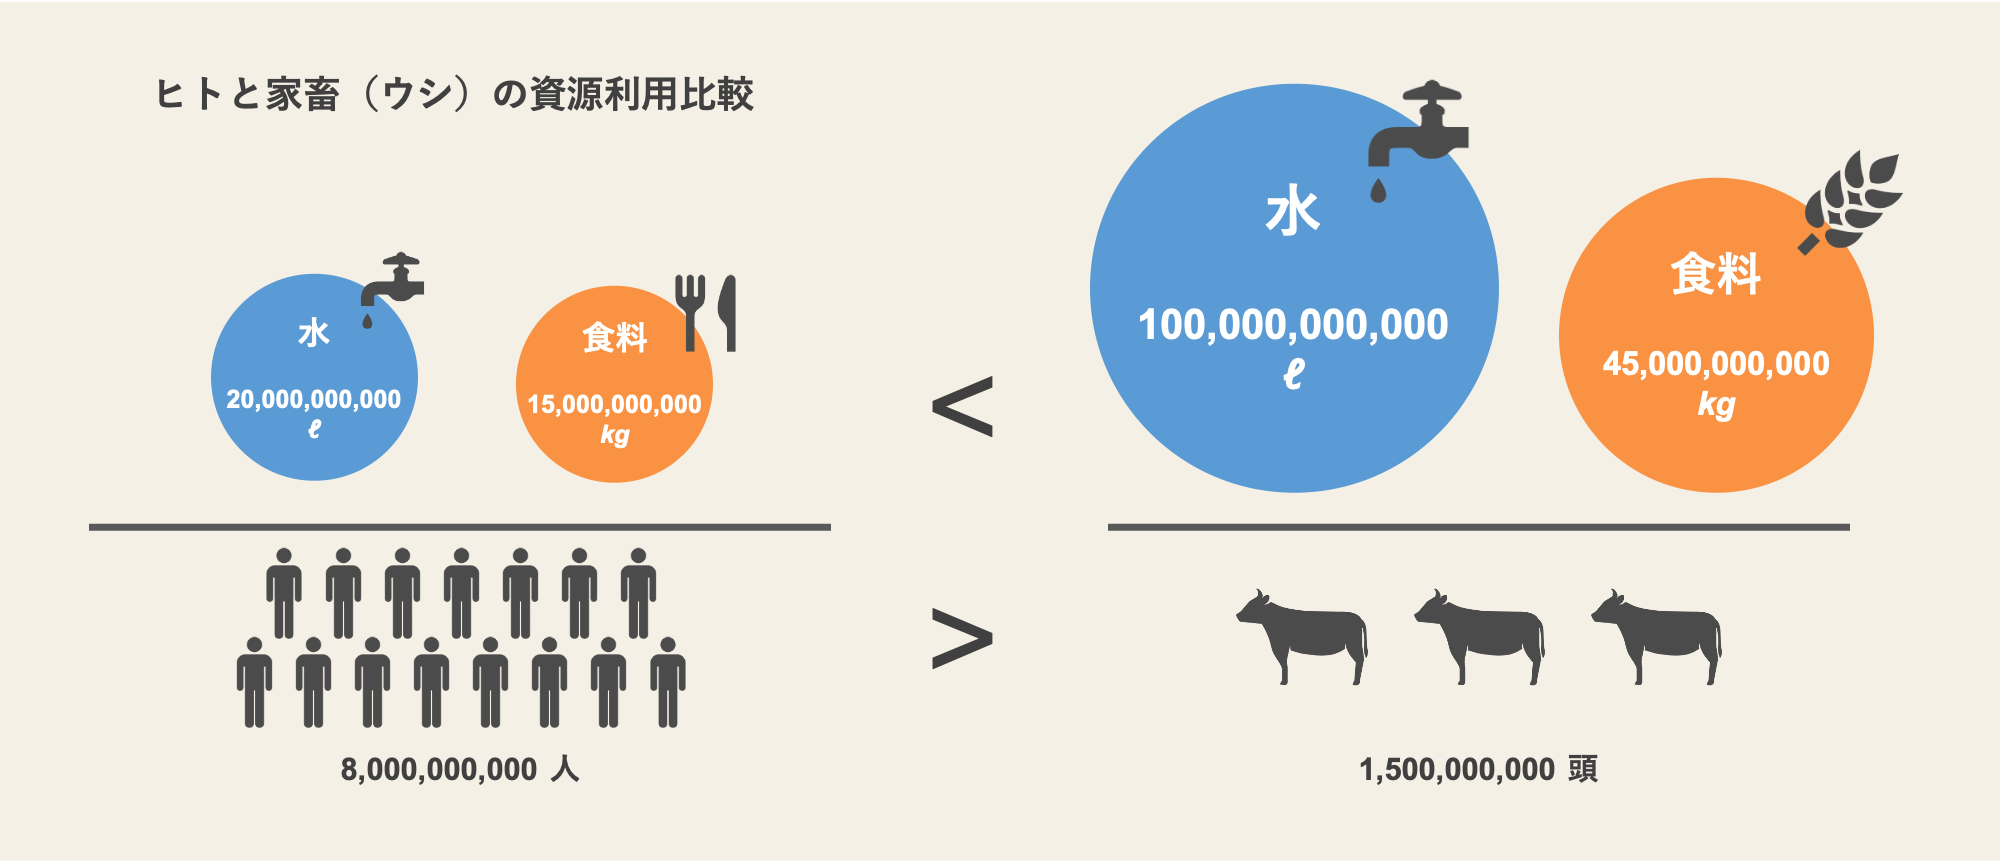 ヒトと家畜（ウシ）の資源利用比較